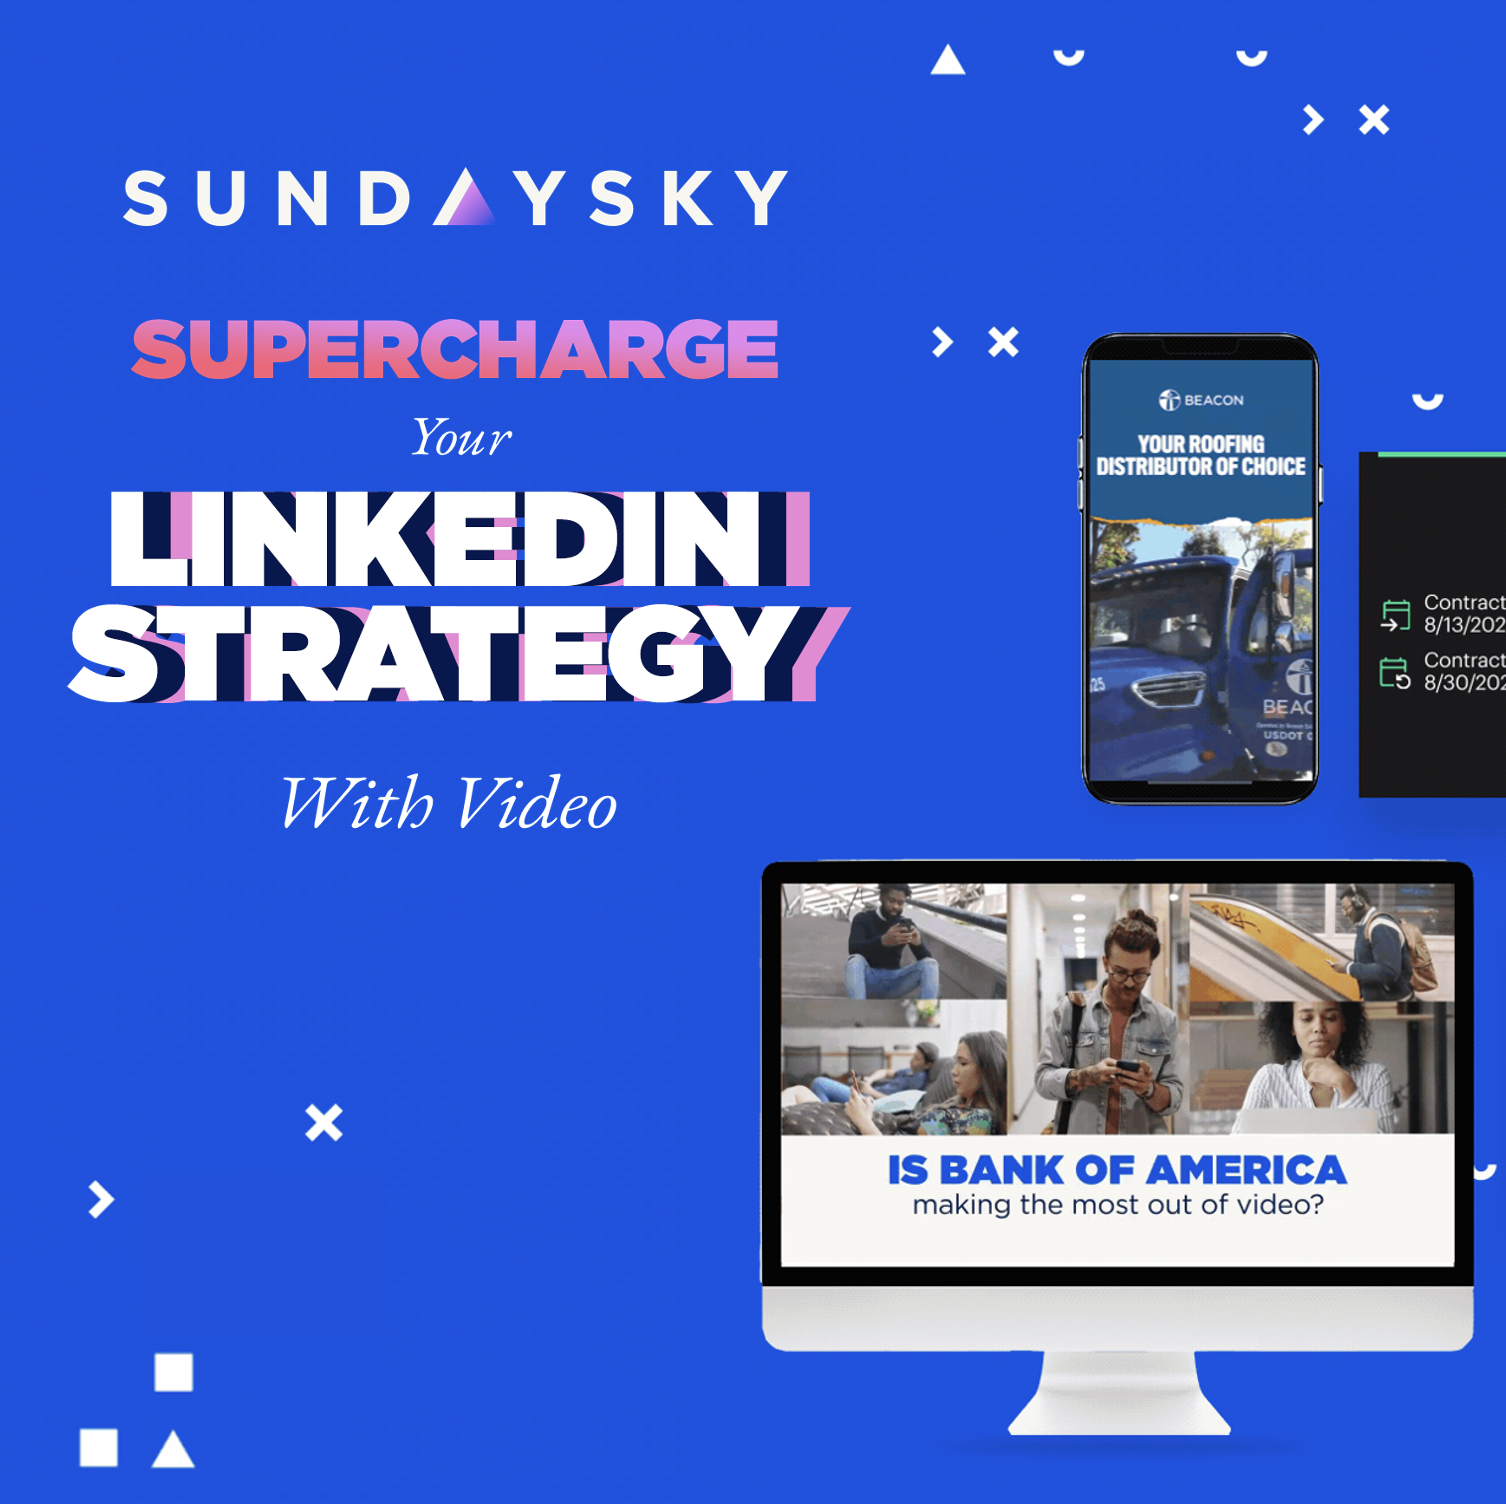 SundaySky joins the LinkedIn Marketing Partner Program